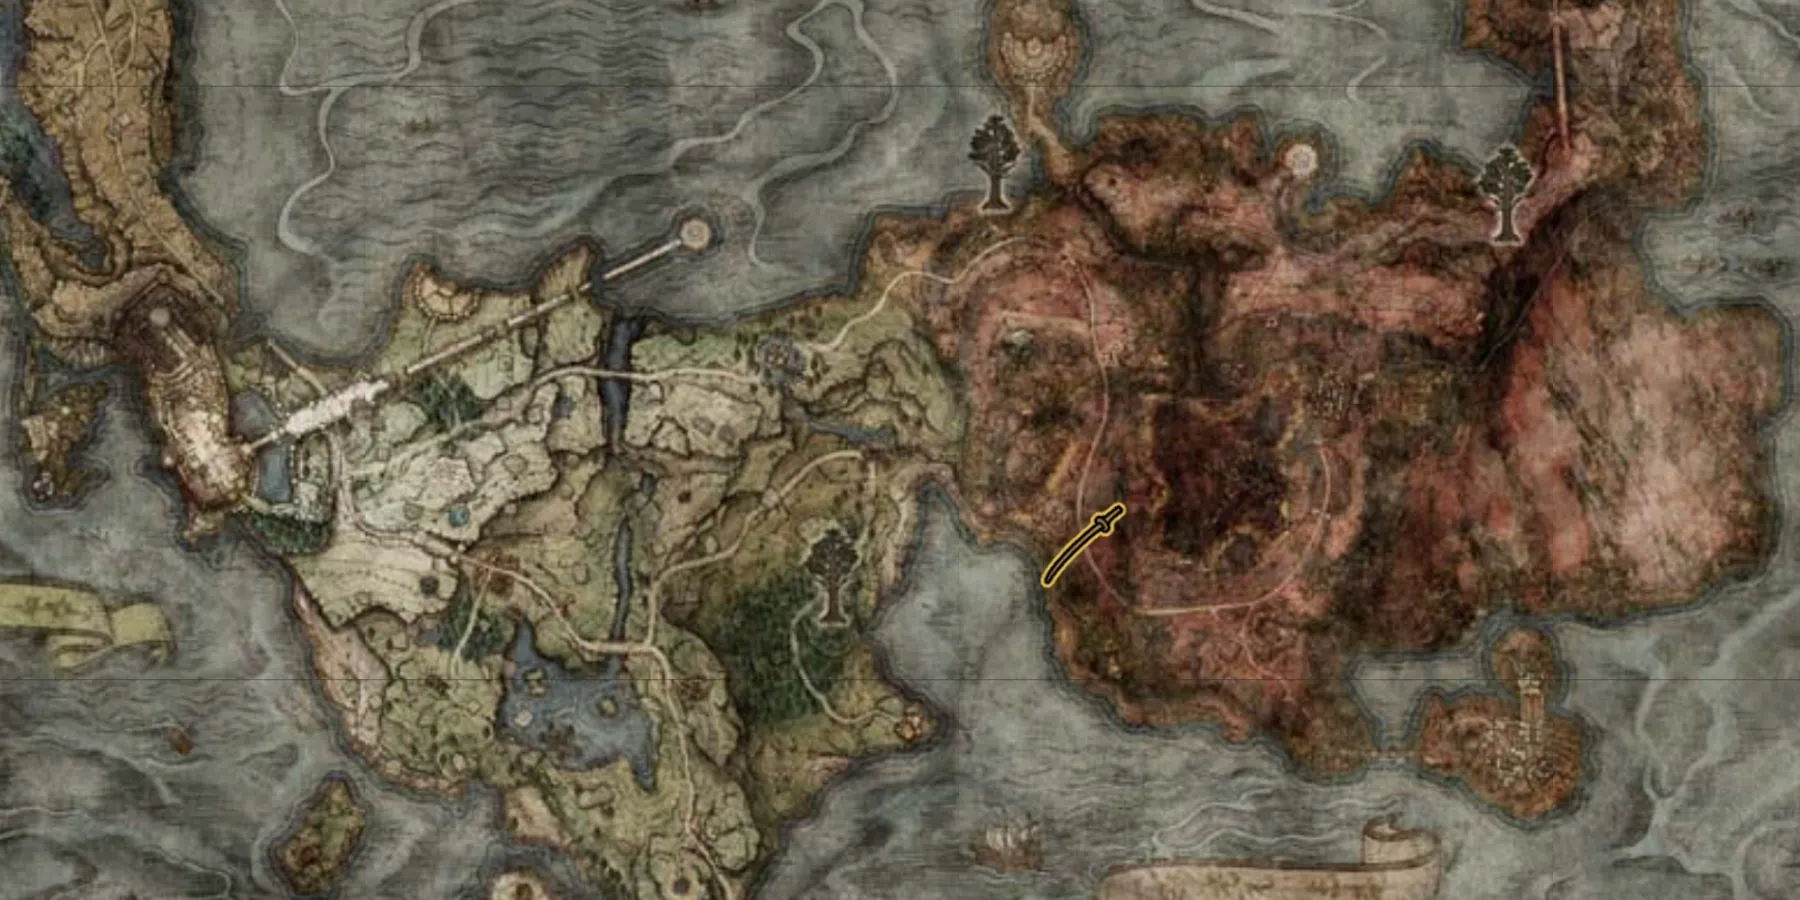 エルデンリング: 地図上の流星鉱剣の場所